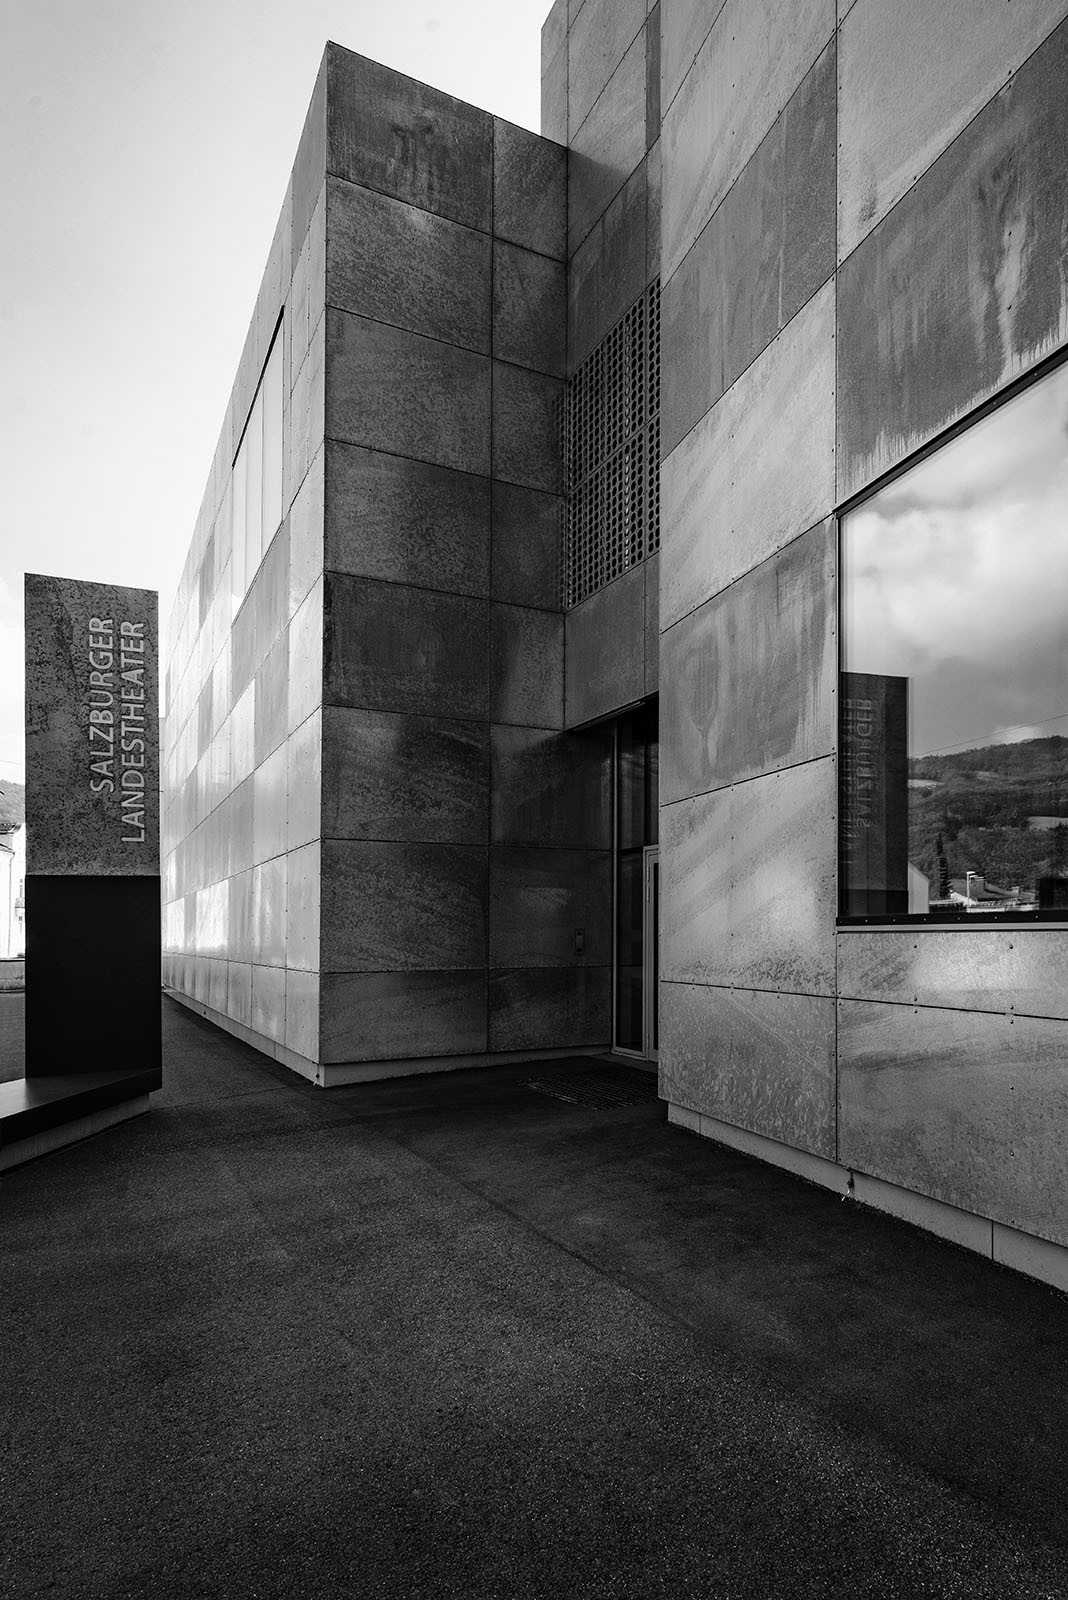 Probenzentrum des Landestheaters, Probenzentrum des Landestheaters, Salzburg - Architekturwerkstatt Zopf - Black & White Fine Art Architecture Photography